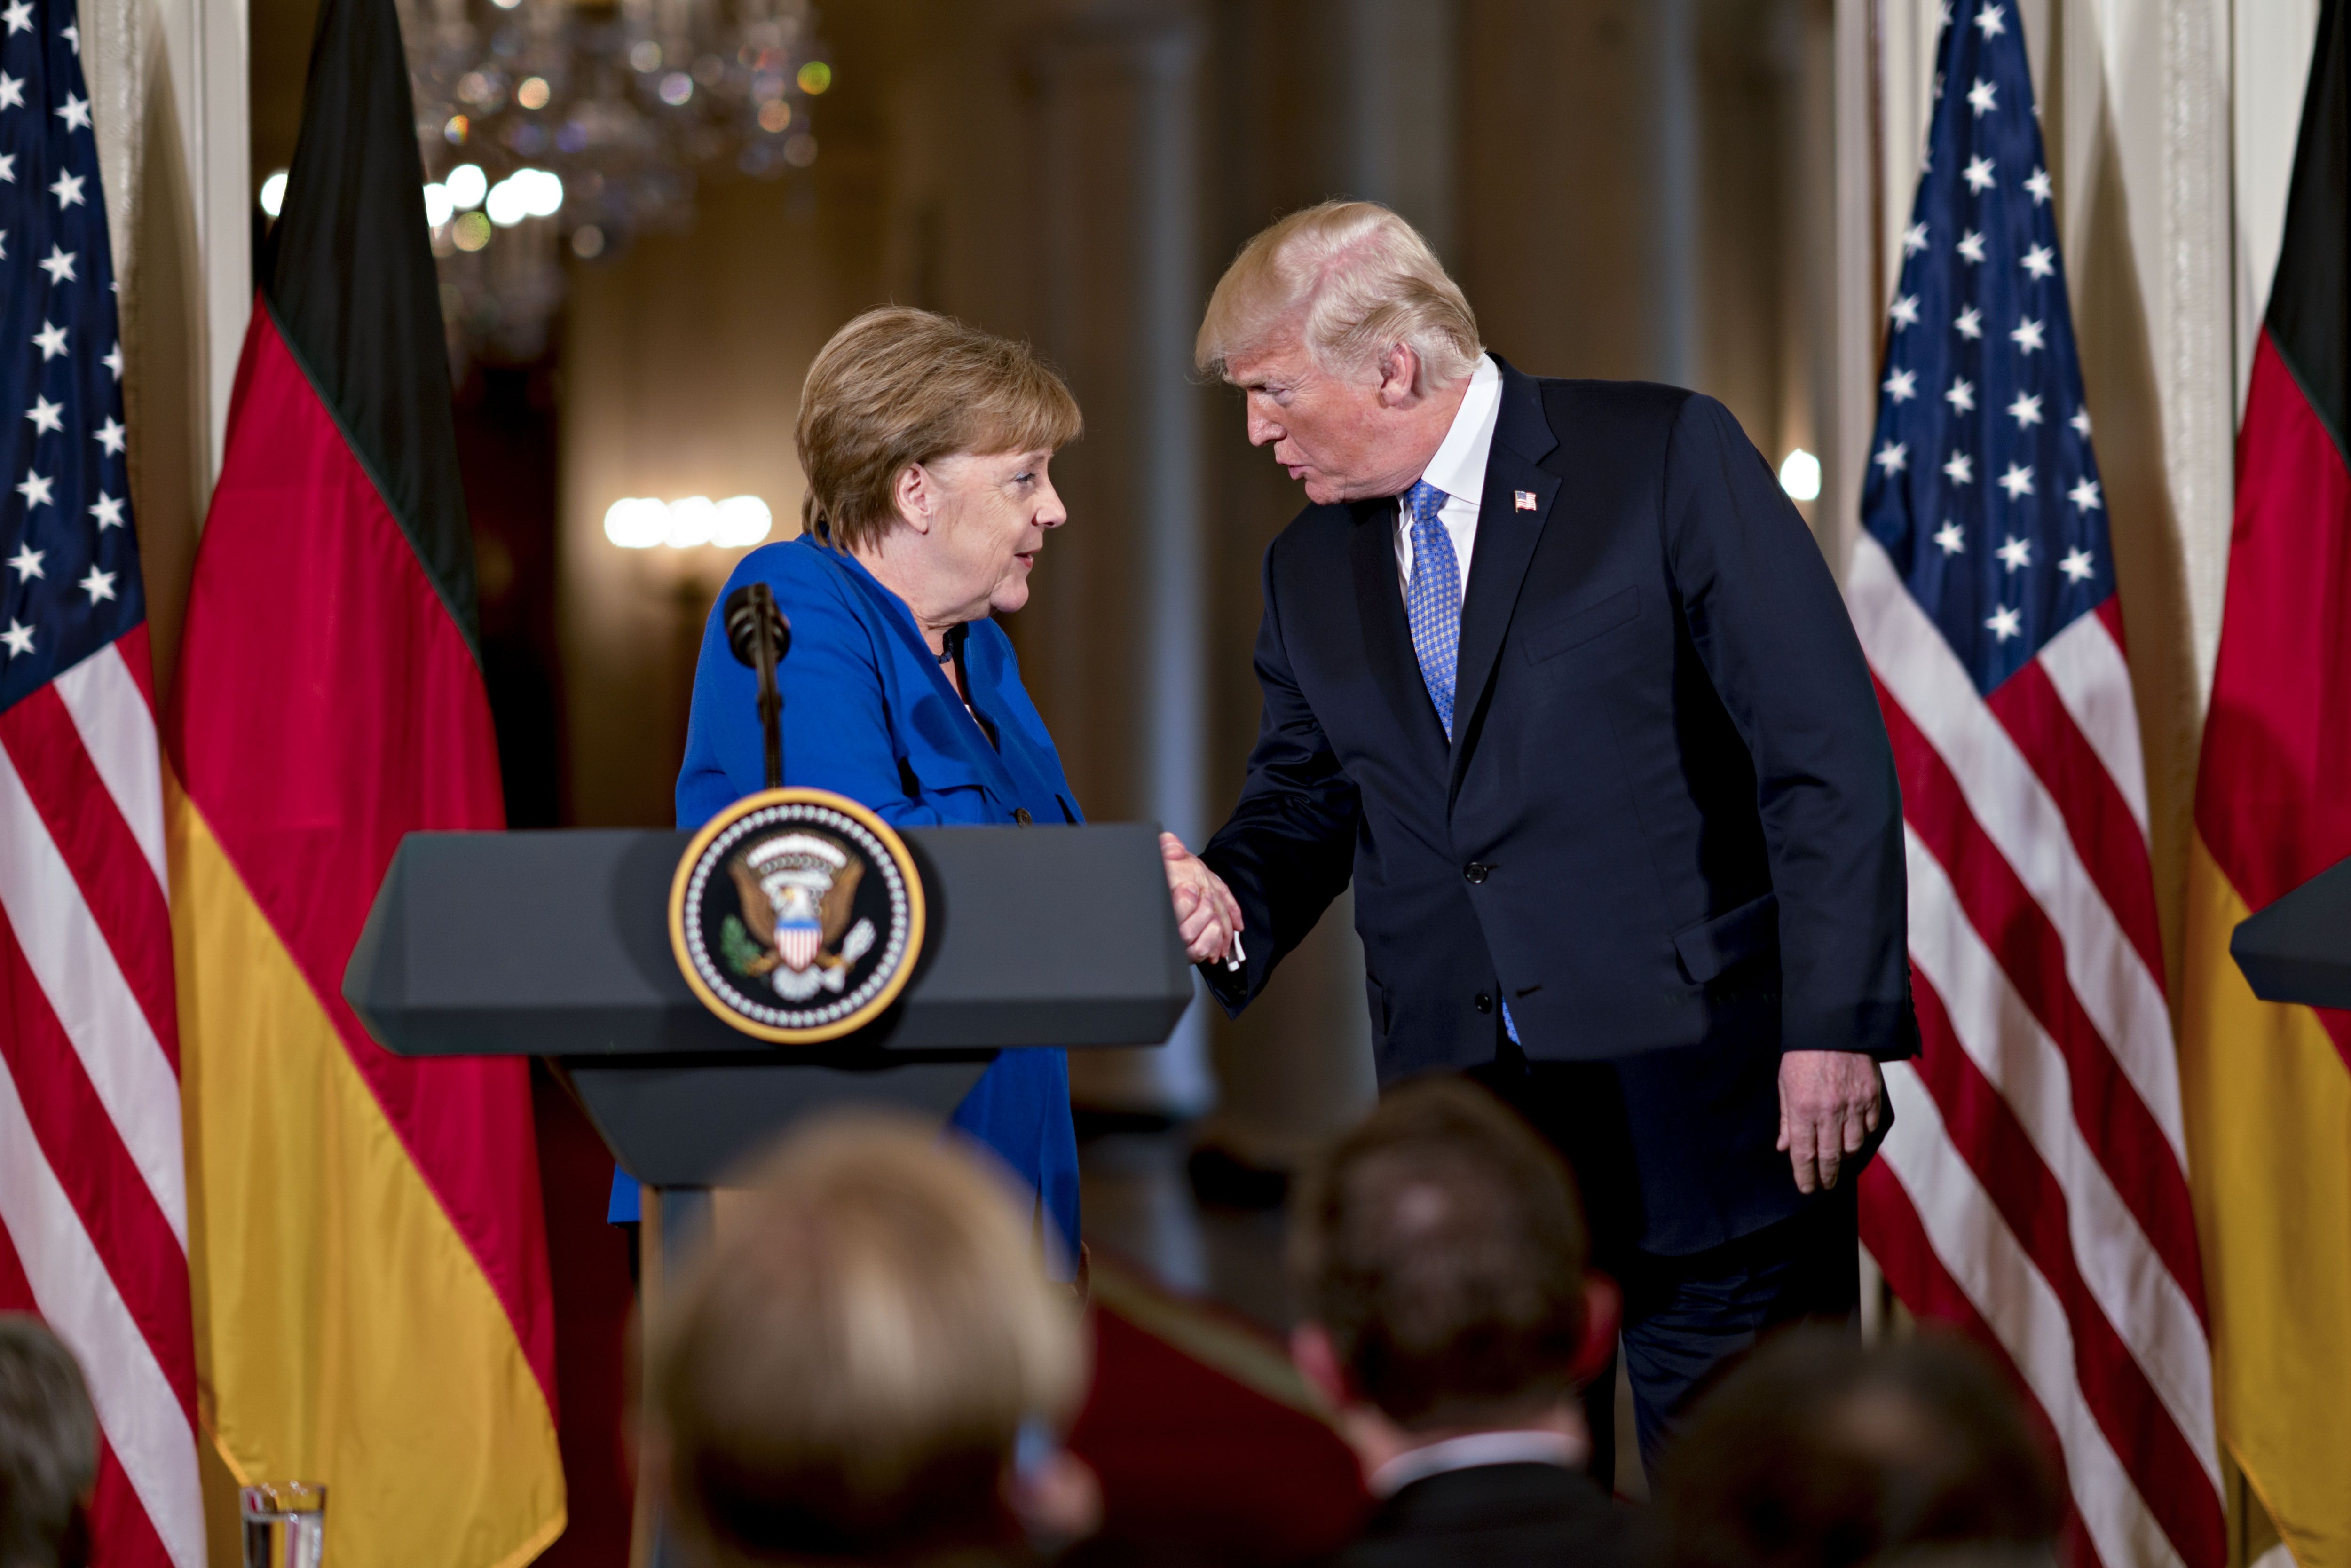 Una investigación periodística reveló el despectivo apodo que Donald Trump le puso a la ex canciller alemana Angela Merkel